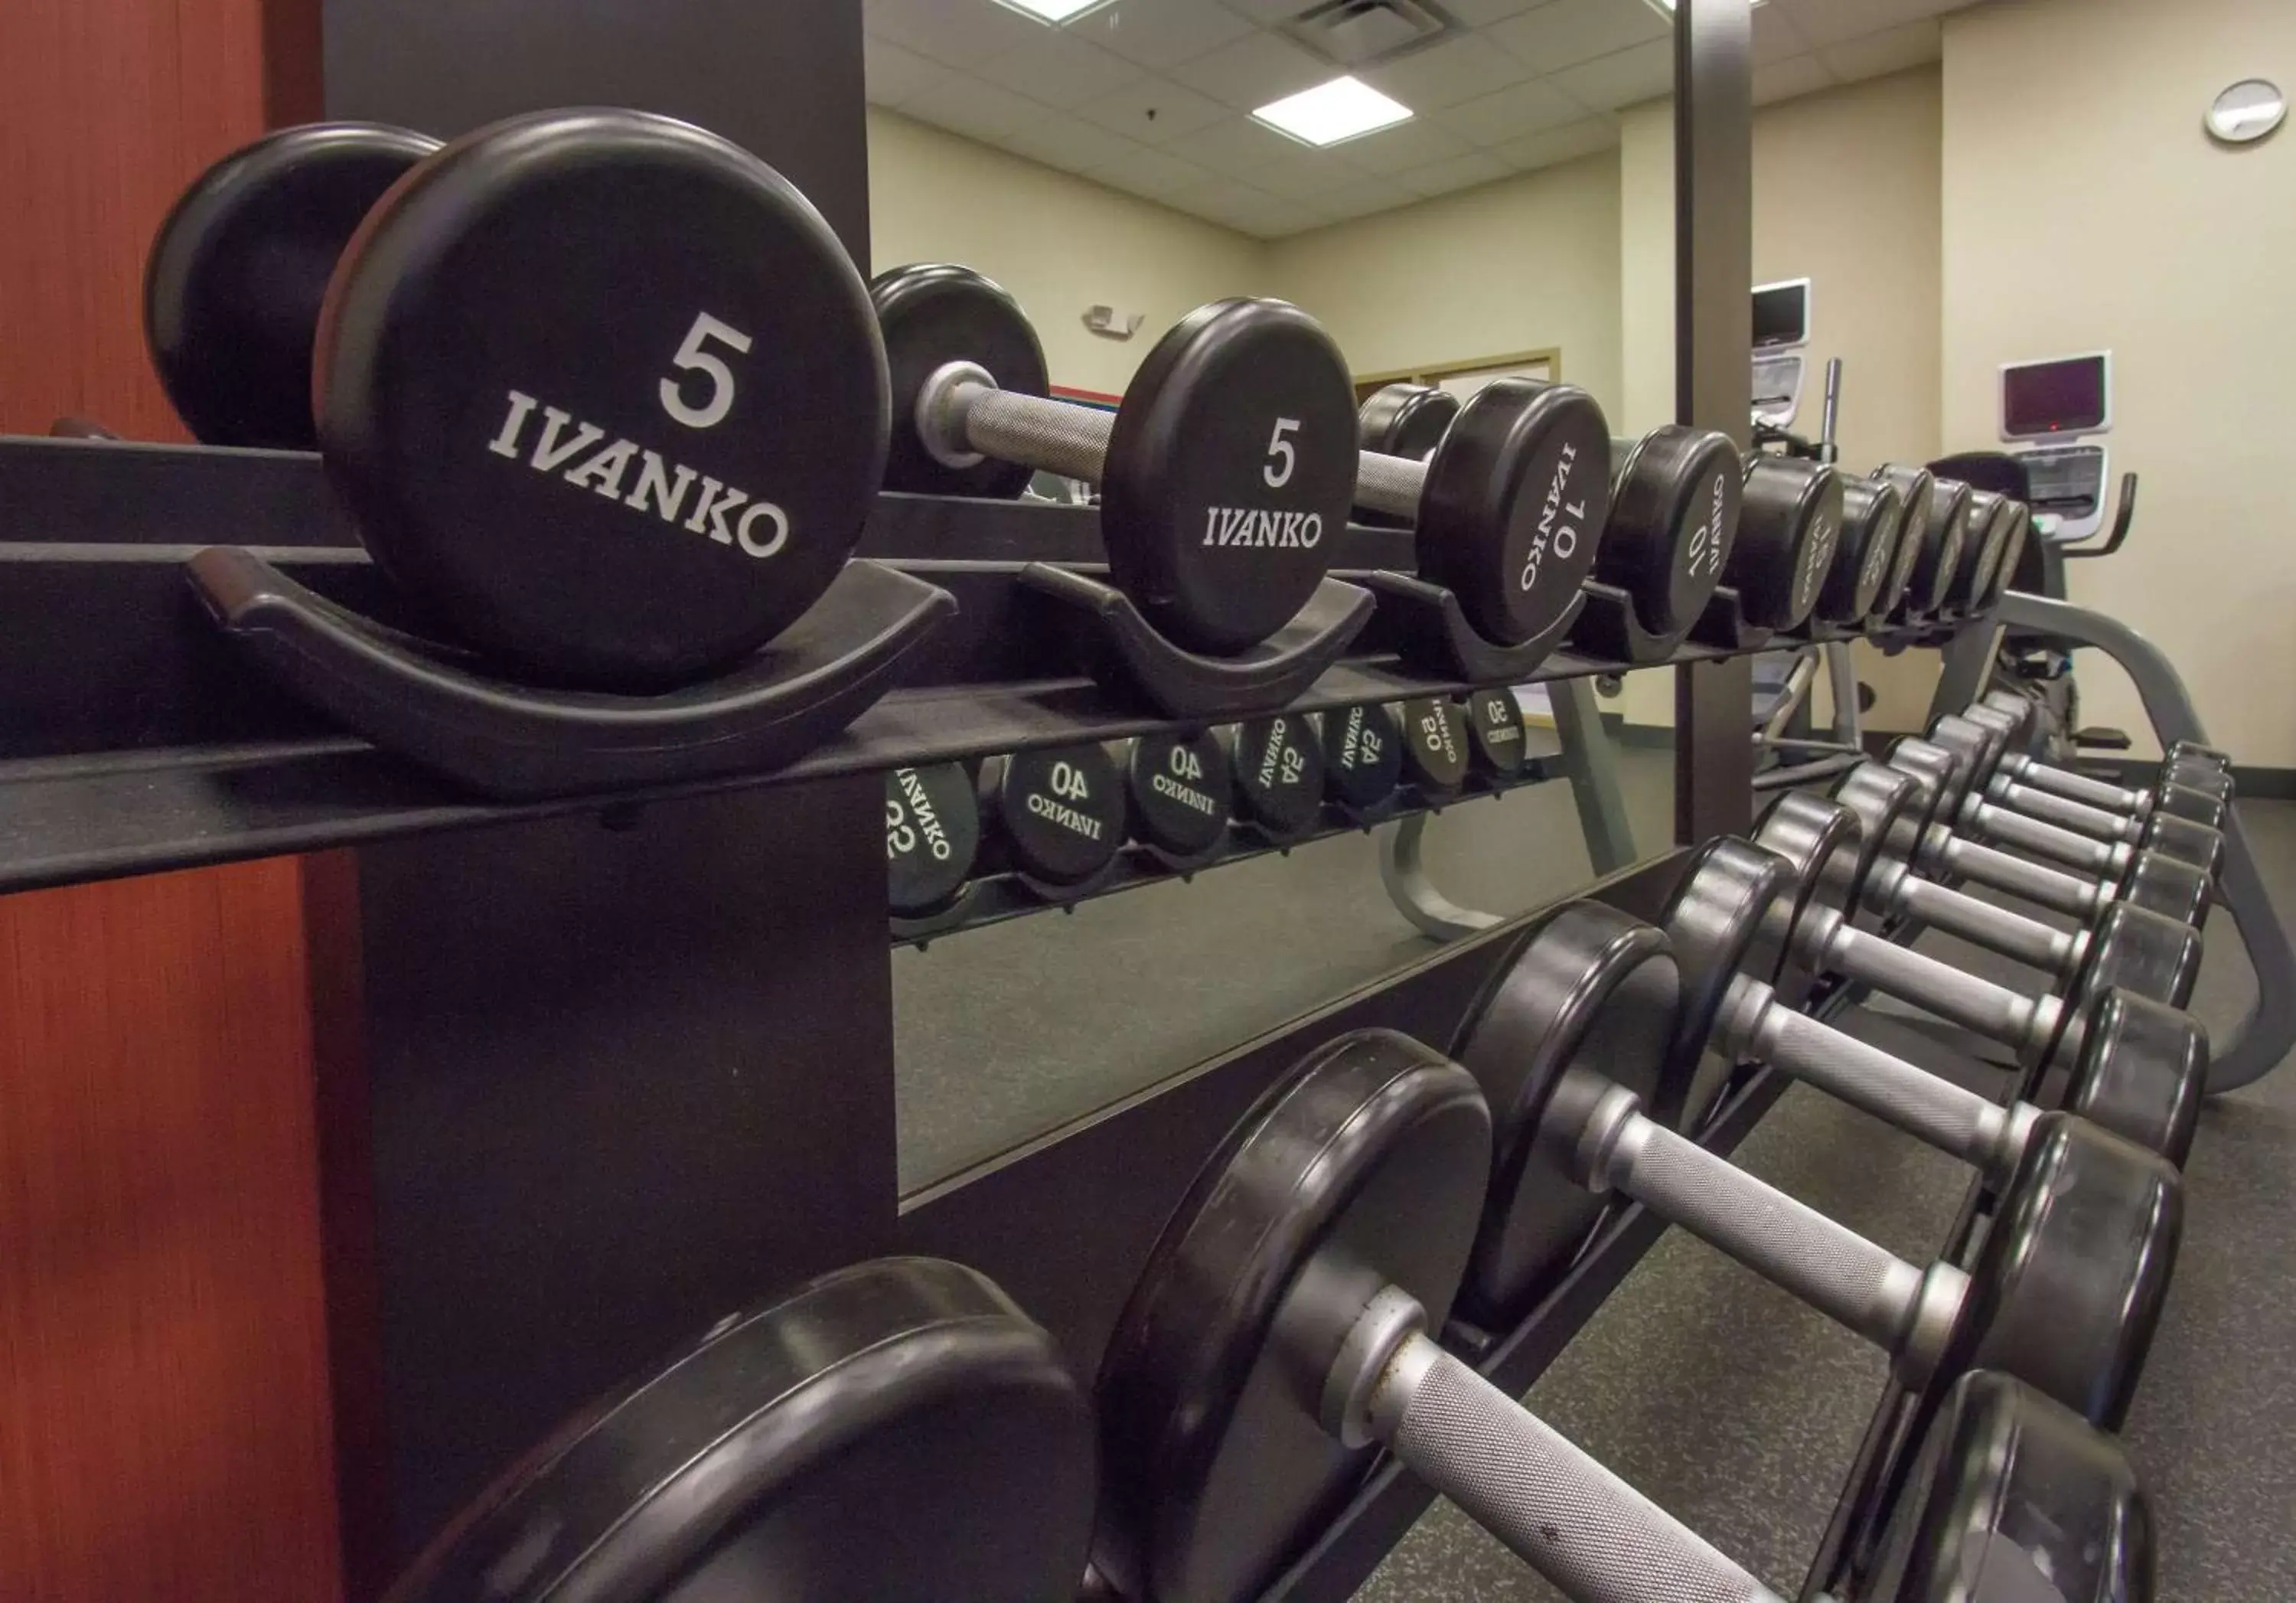 Fitness centre/facilities, Fitness Center/Facilities in Hampton Inn Greenville